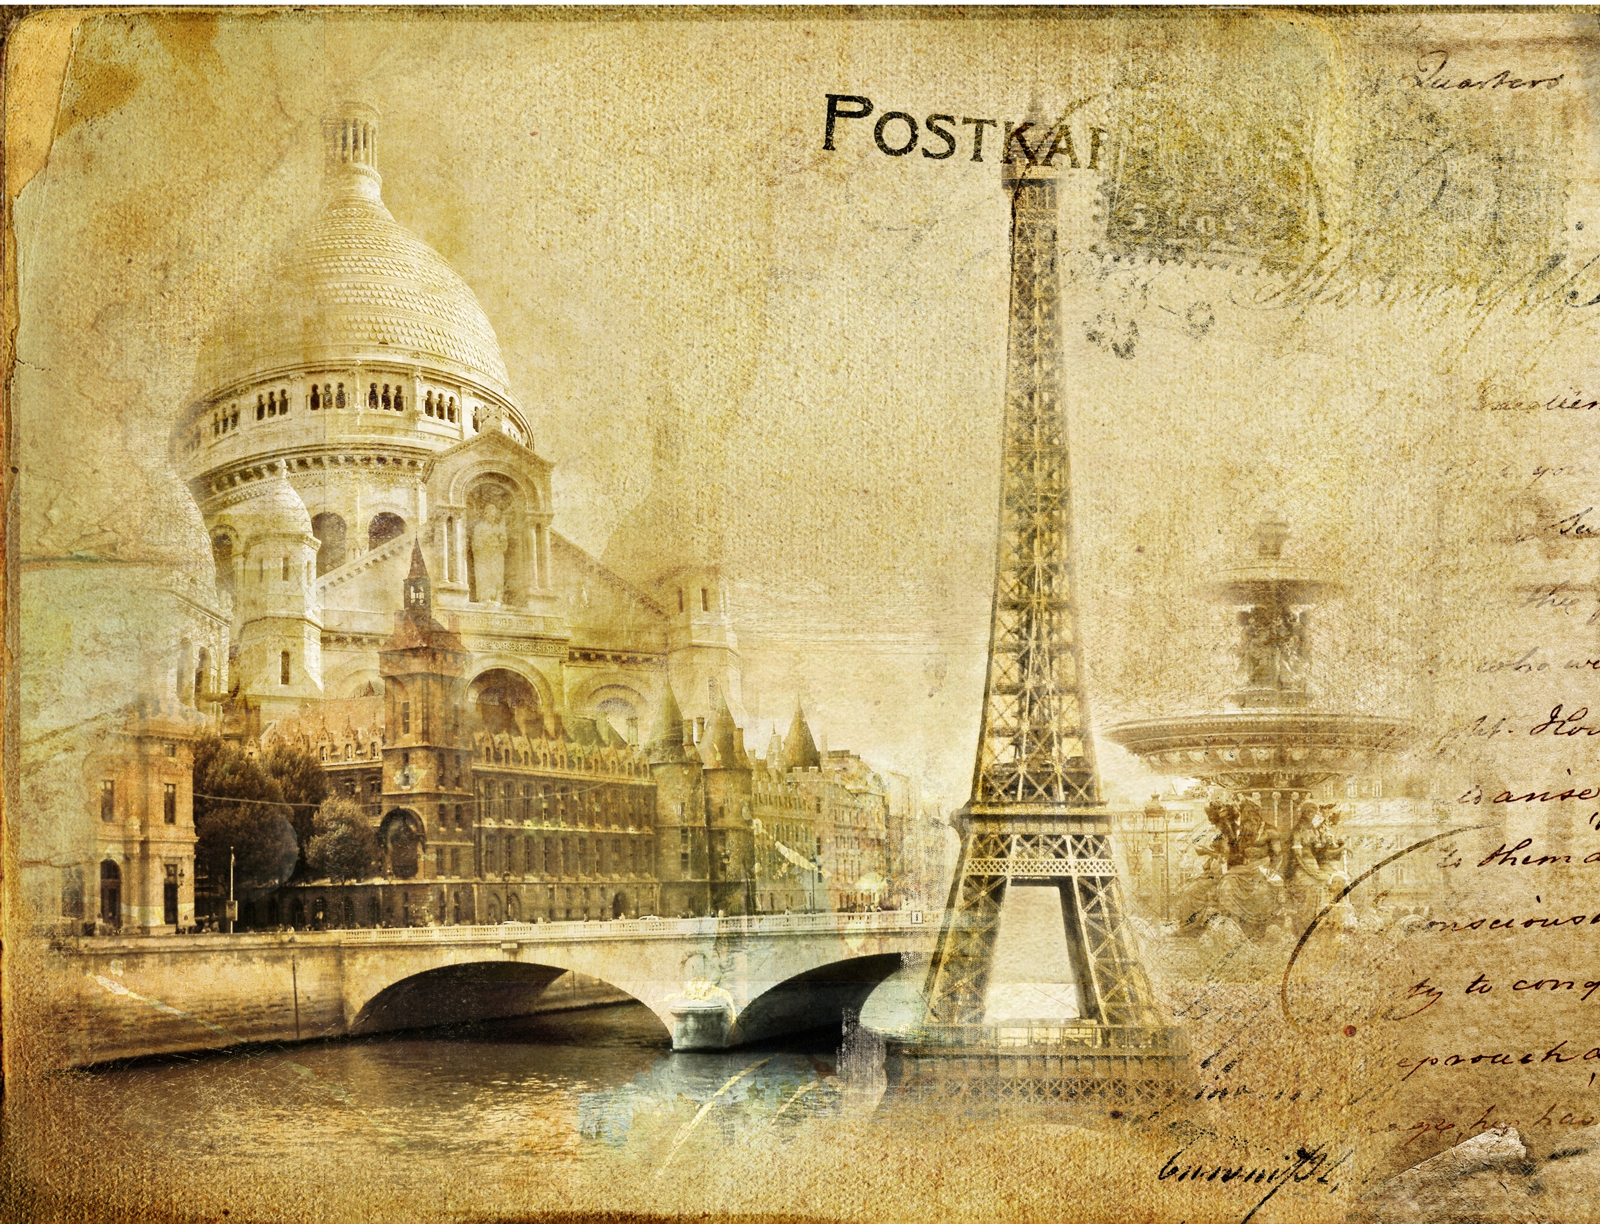 Leinwand Bild edel  Postkarte Paris Vintage